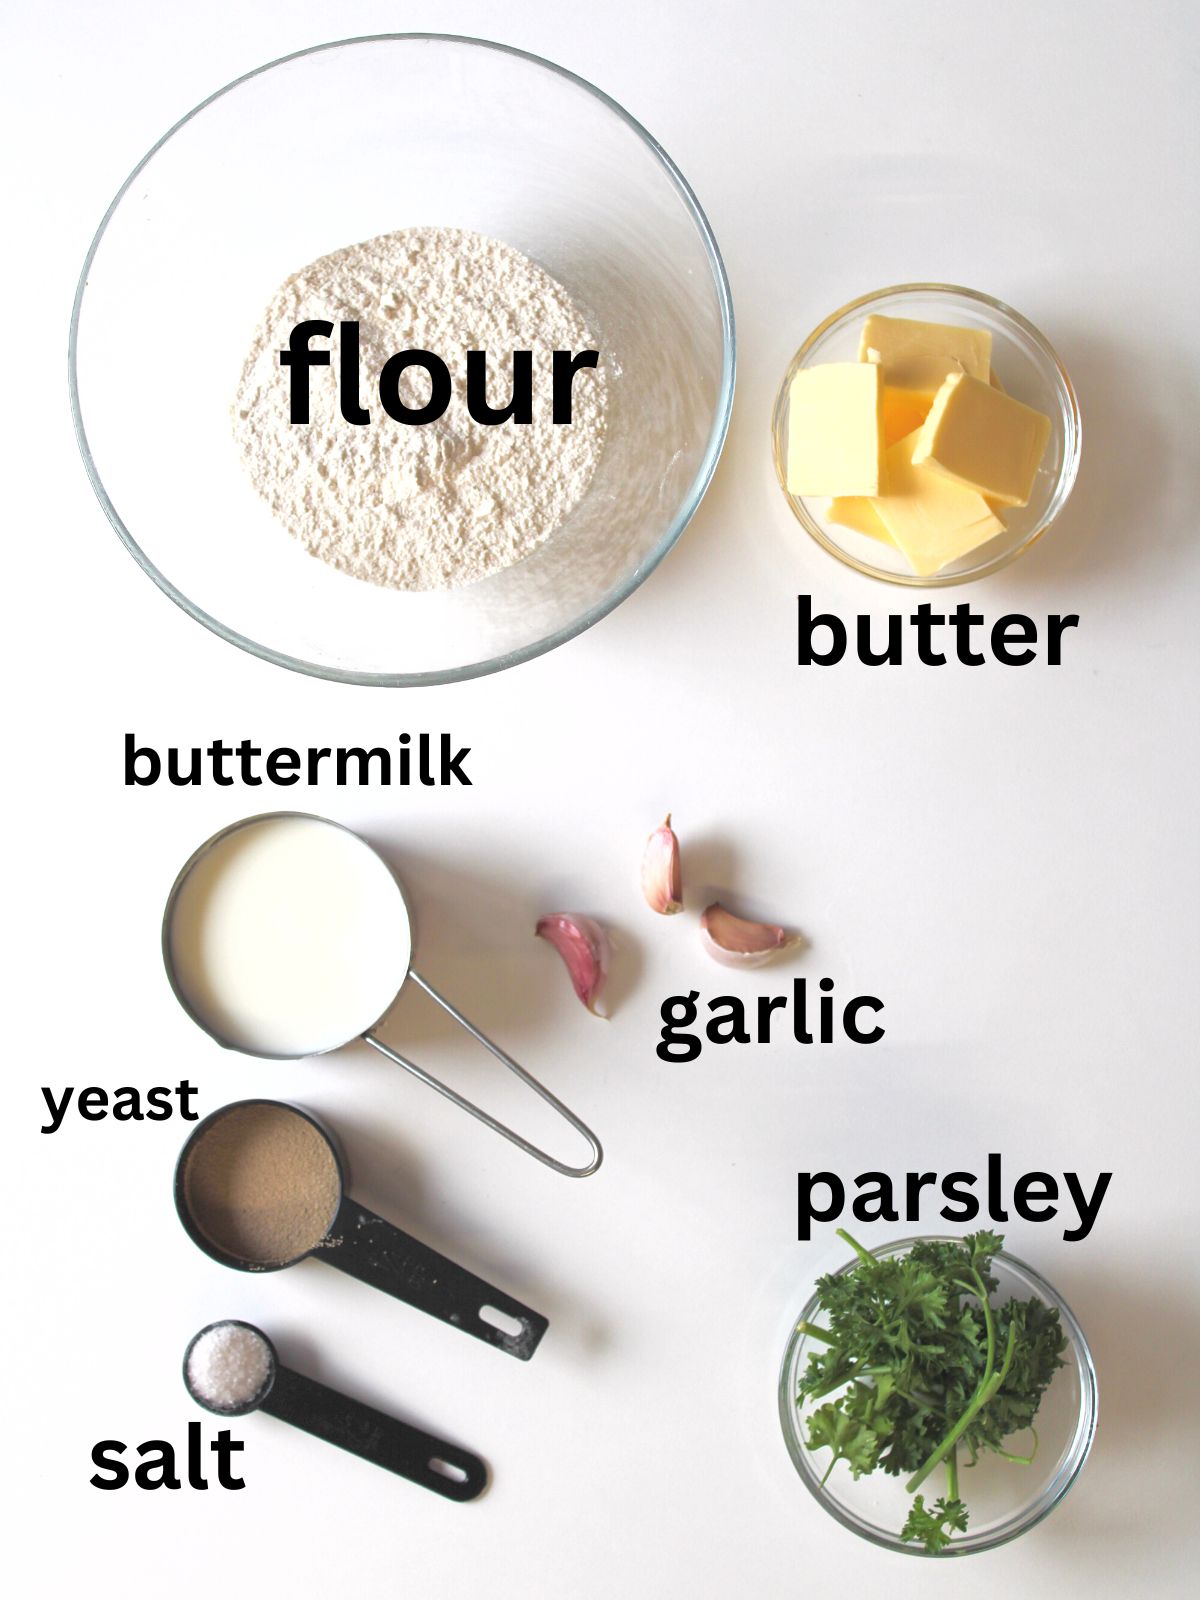 Garlic bread ingredients including flour, butter, buttermilk, garlic, parsley, yeast, and salt.